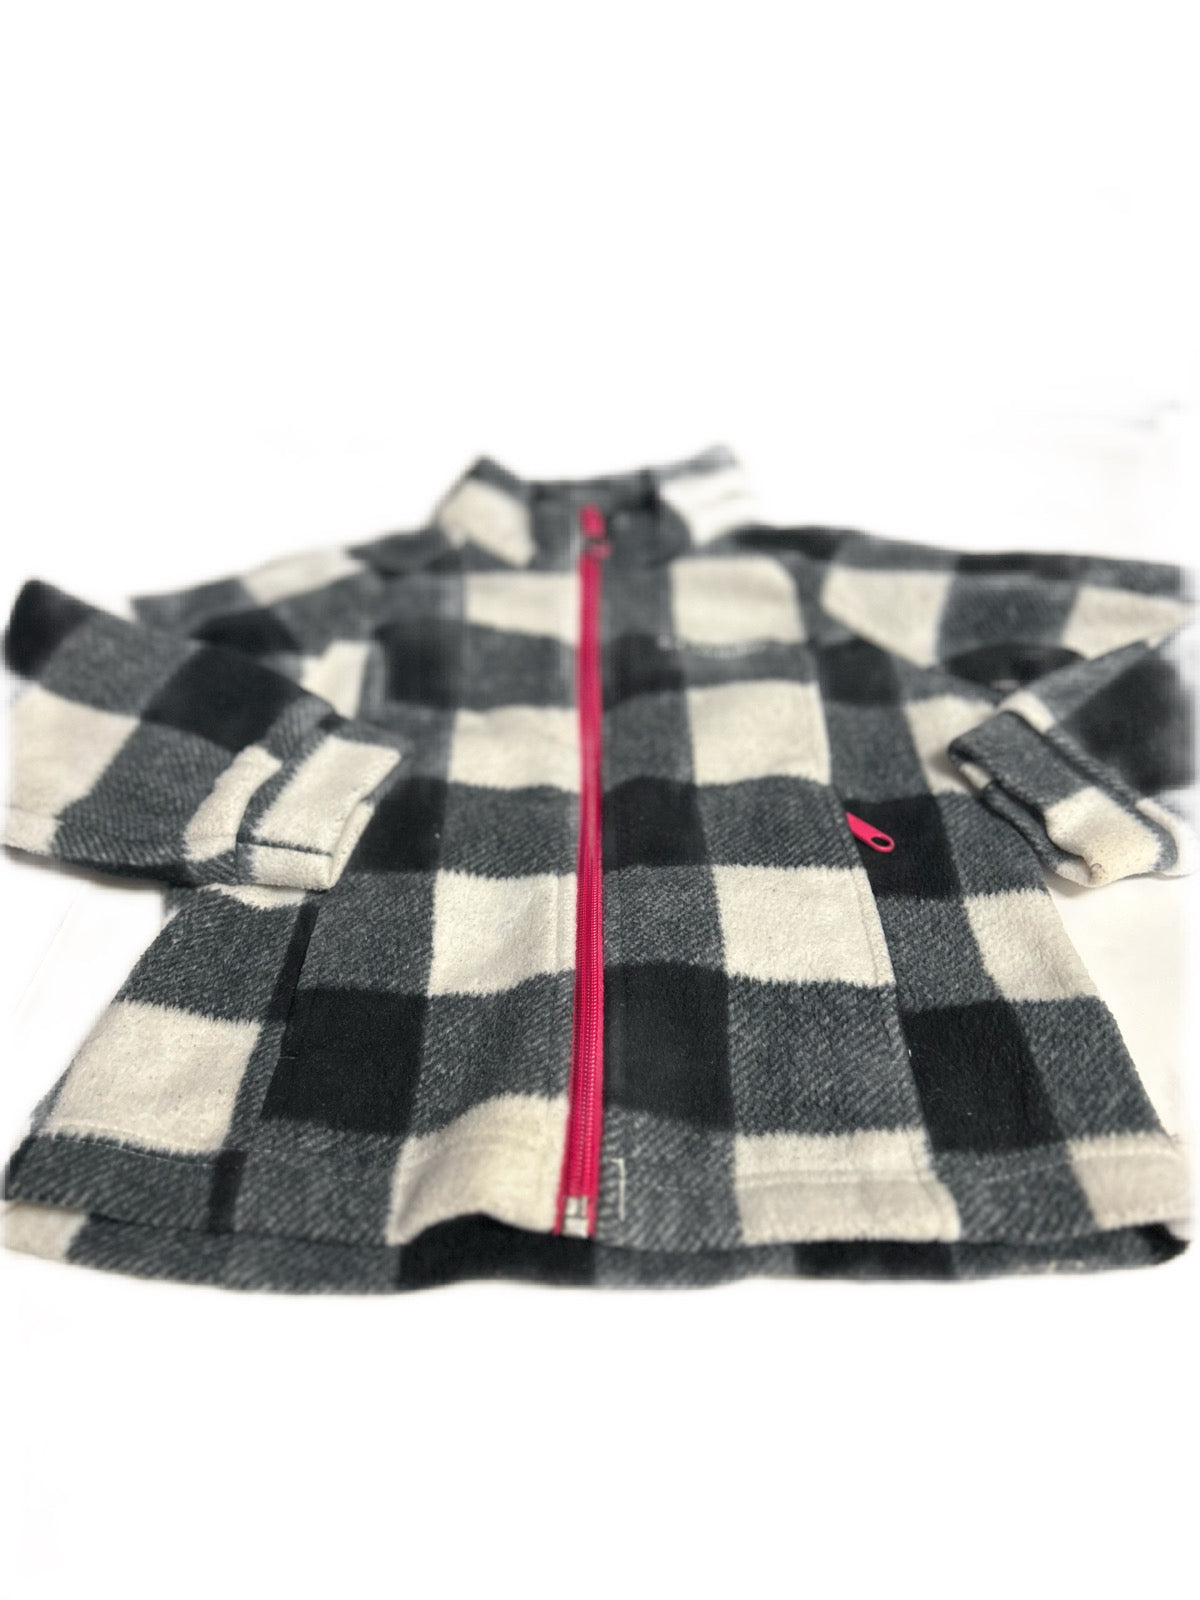 Jacket Fleece, Columbia size 4/5